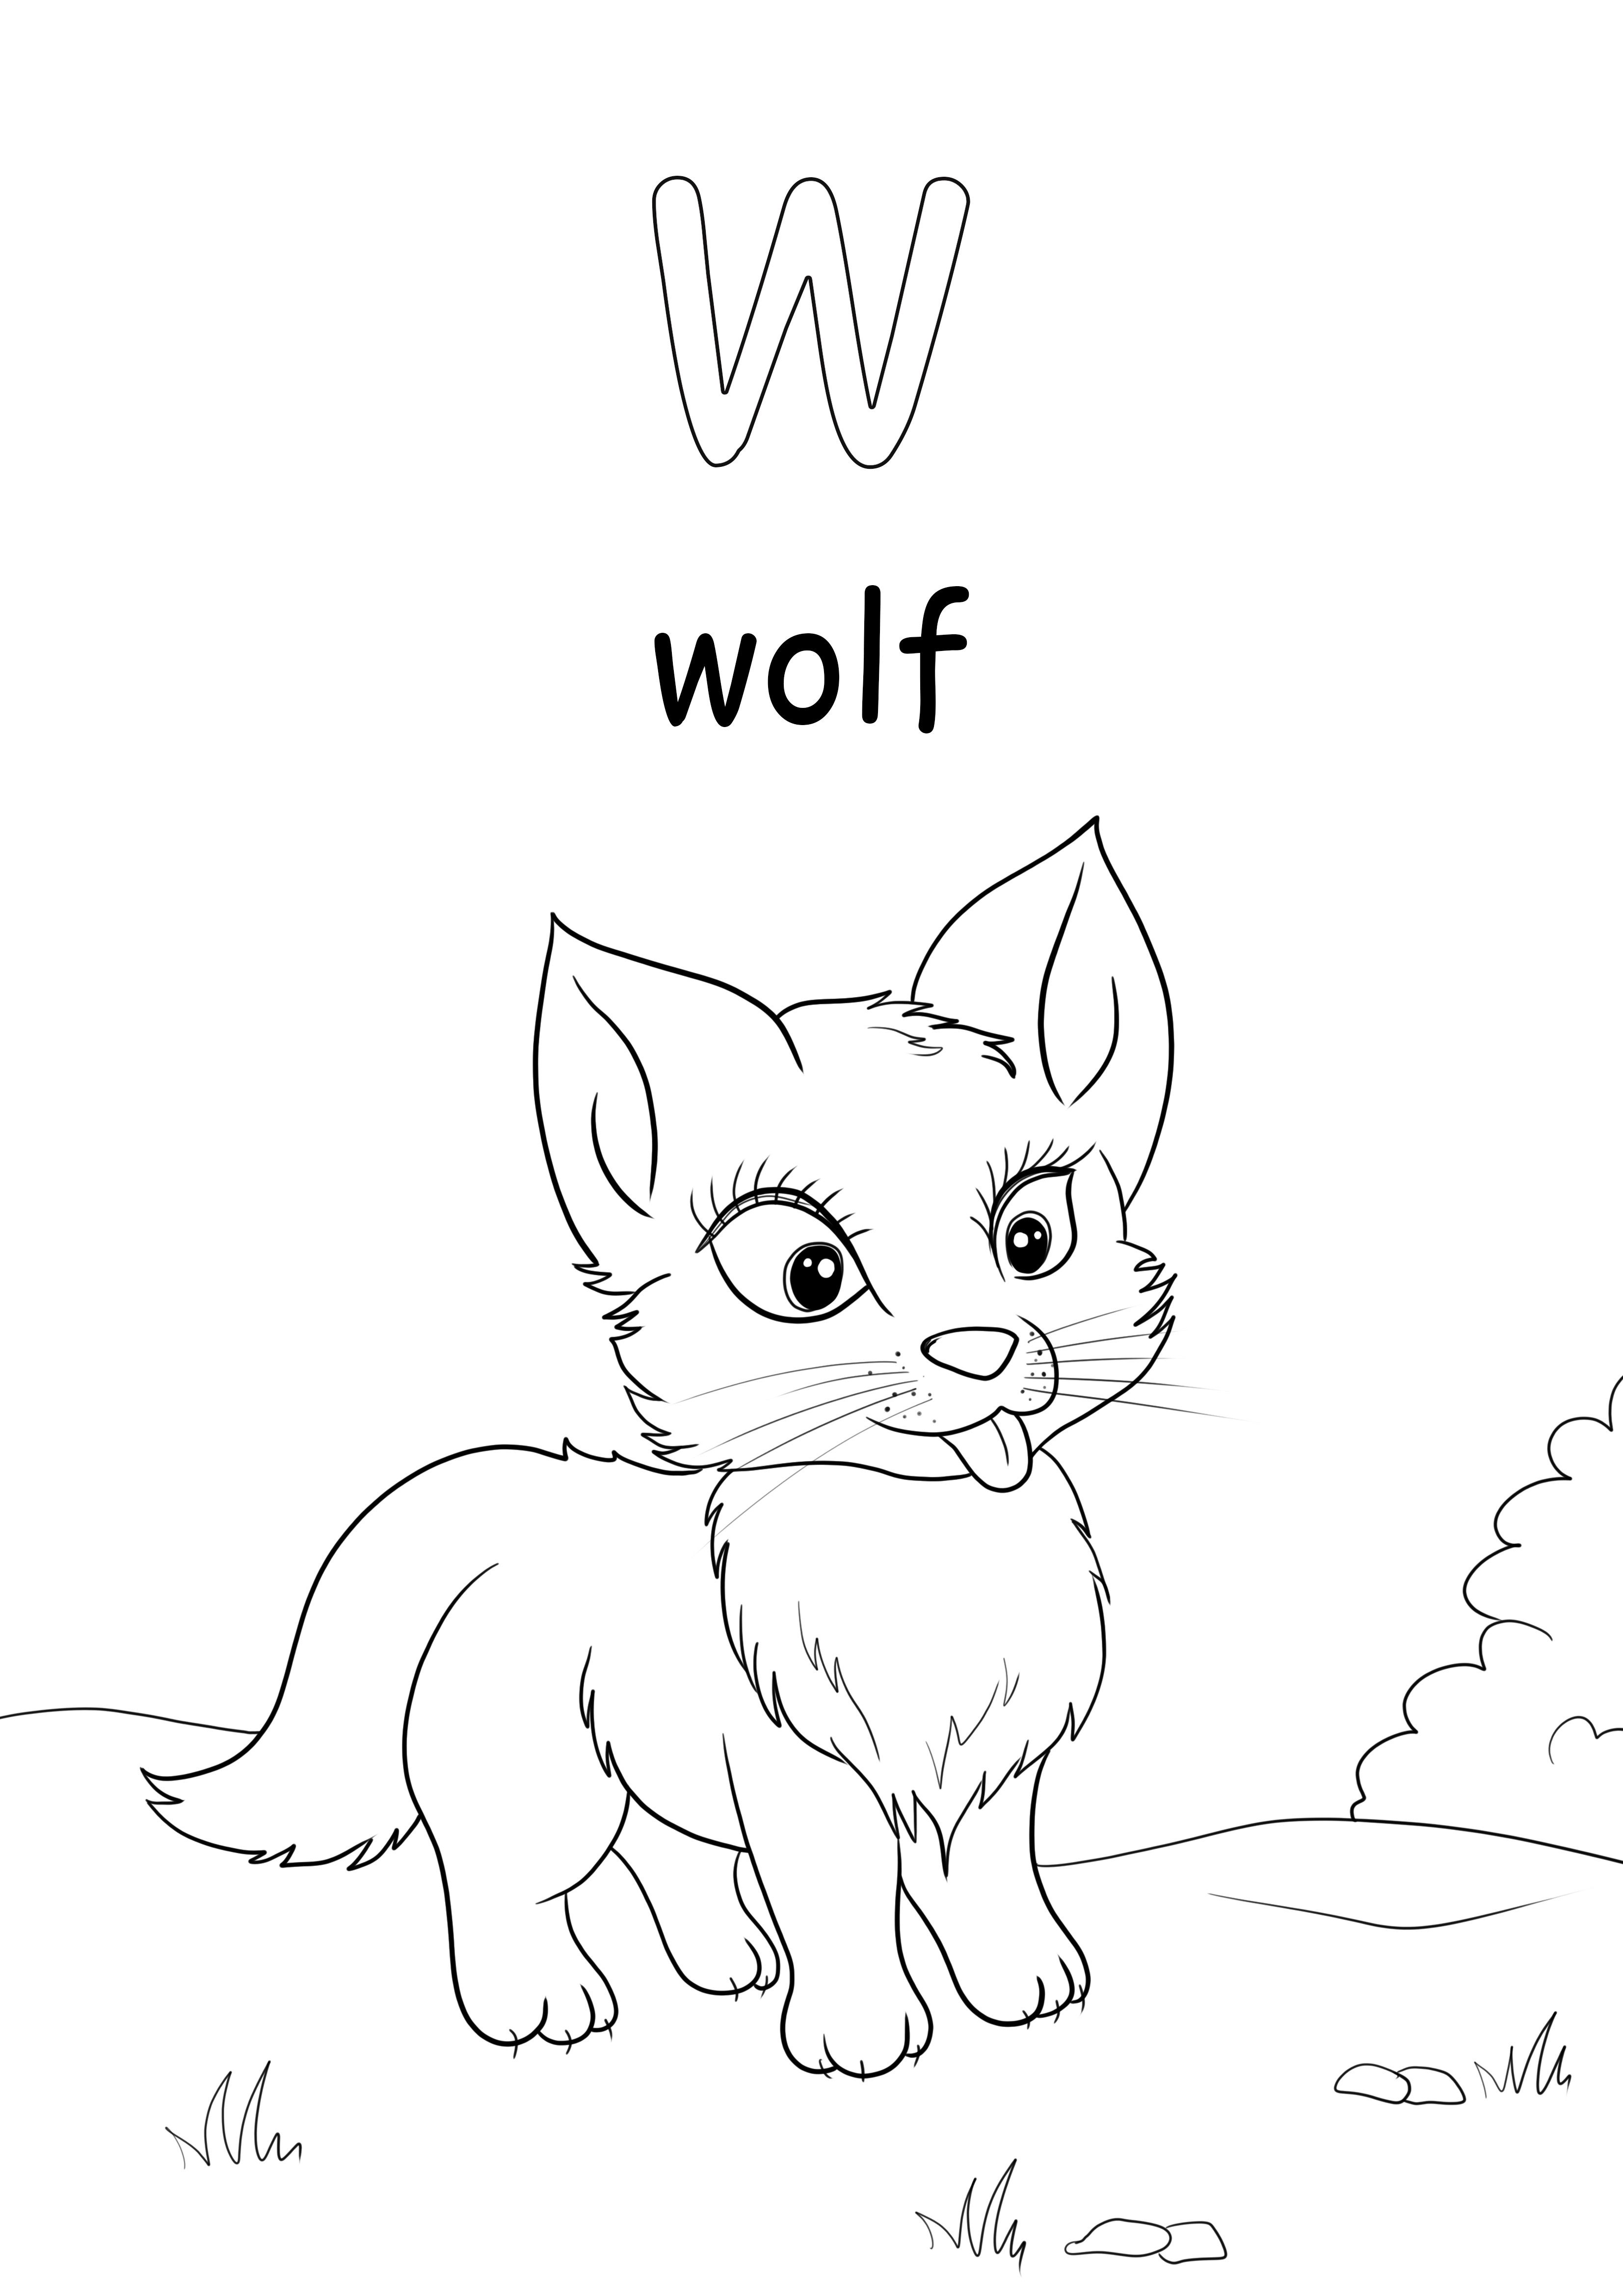 小文字の w は、オオカミの言葉を無料でダウンロードして印刷するためのものです